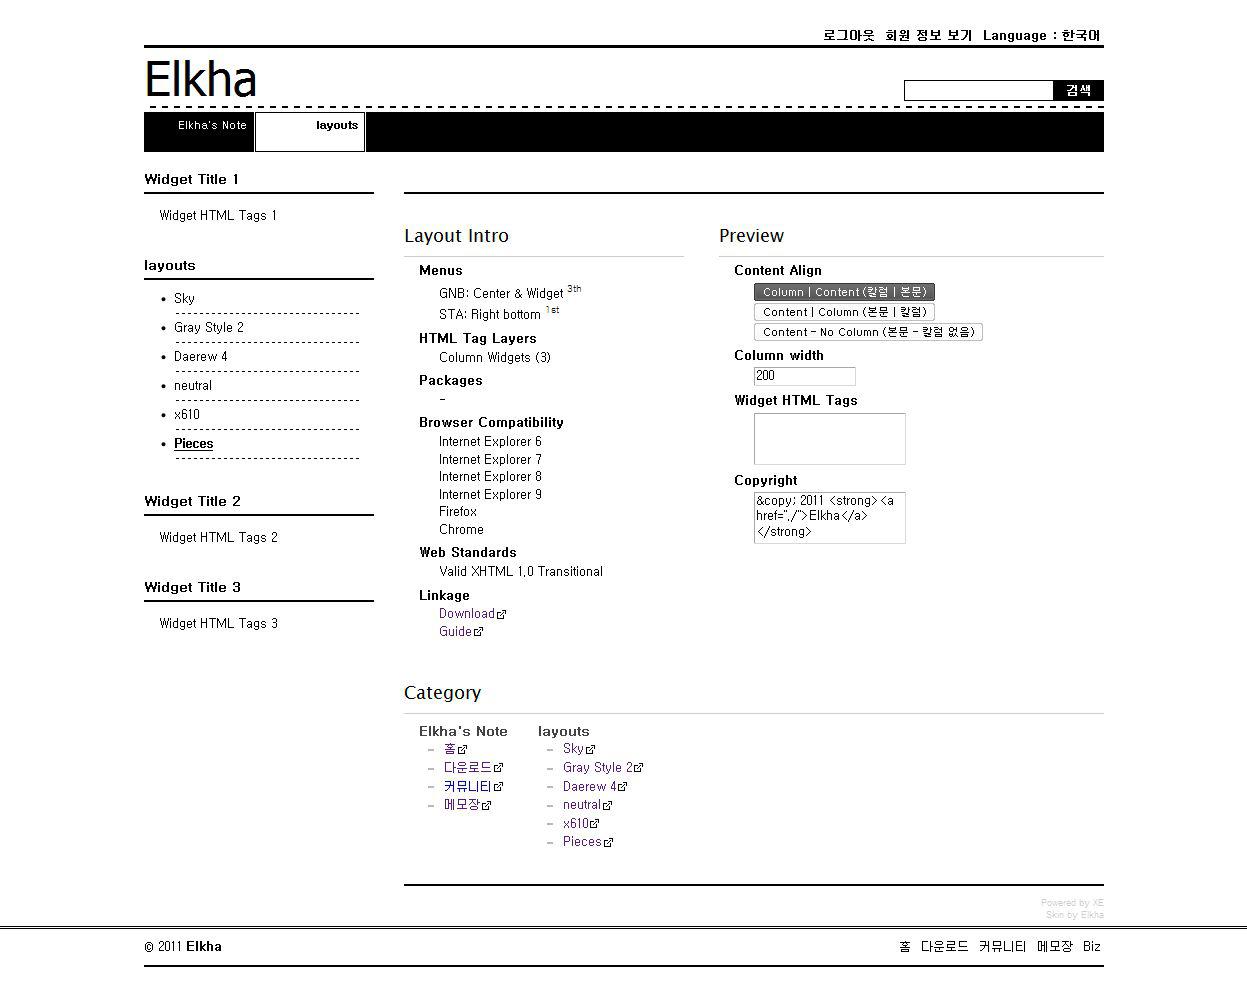 Elkha - Pieces.jpeg